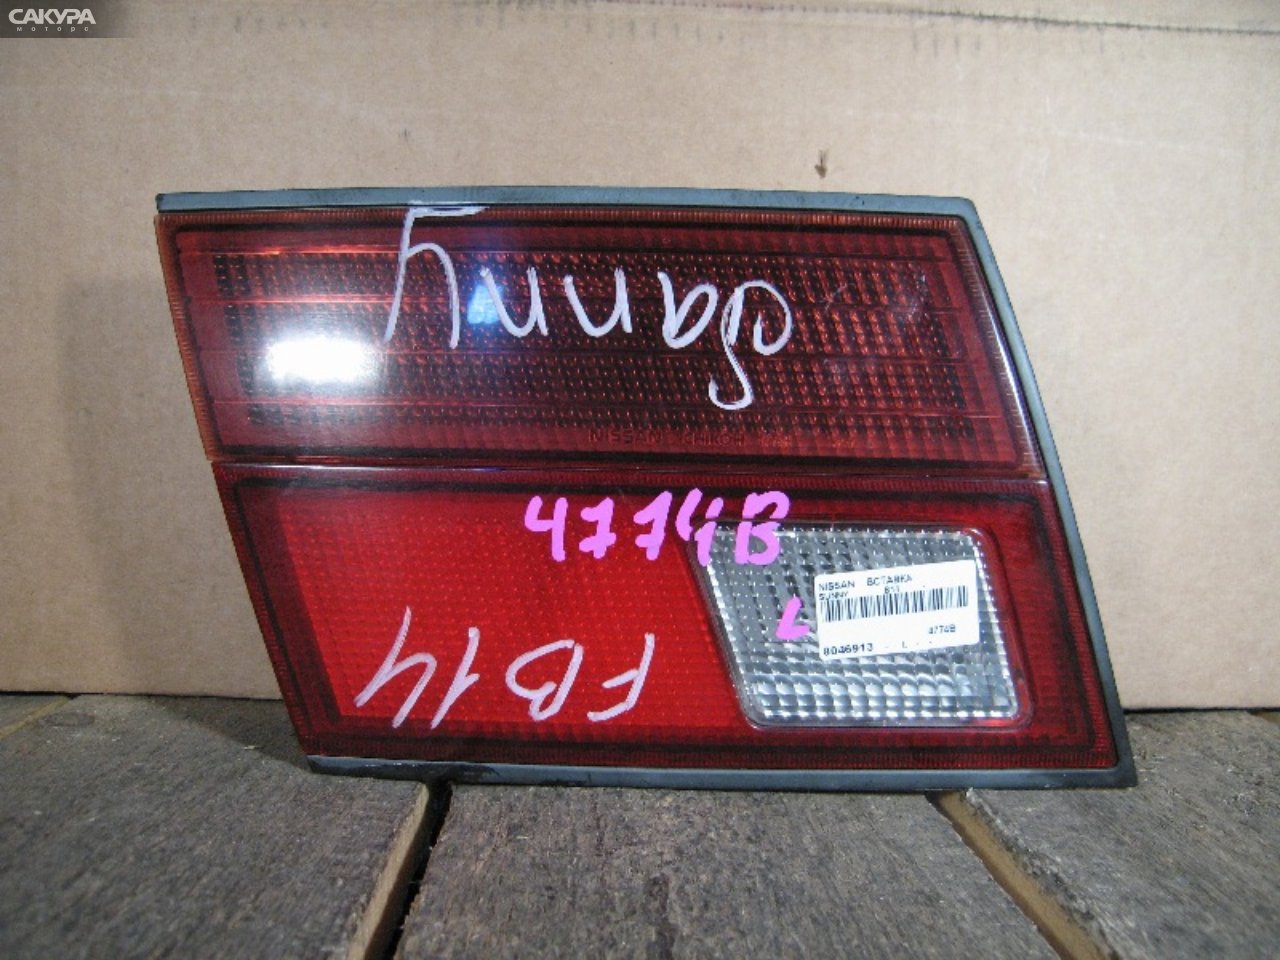 Фонарь вставка багажника левый Nissan Sunny B14 4774B: купить в Сакура Абакан.